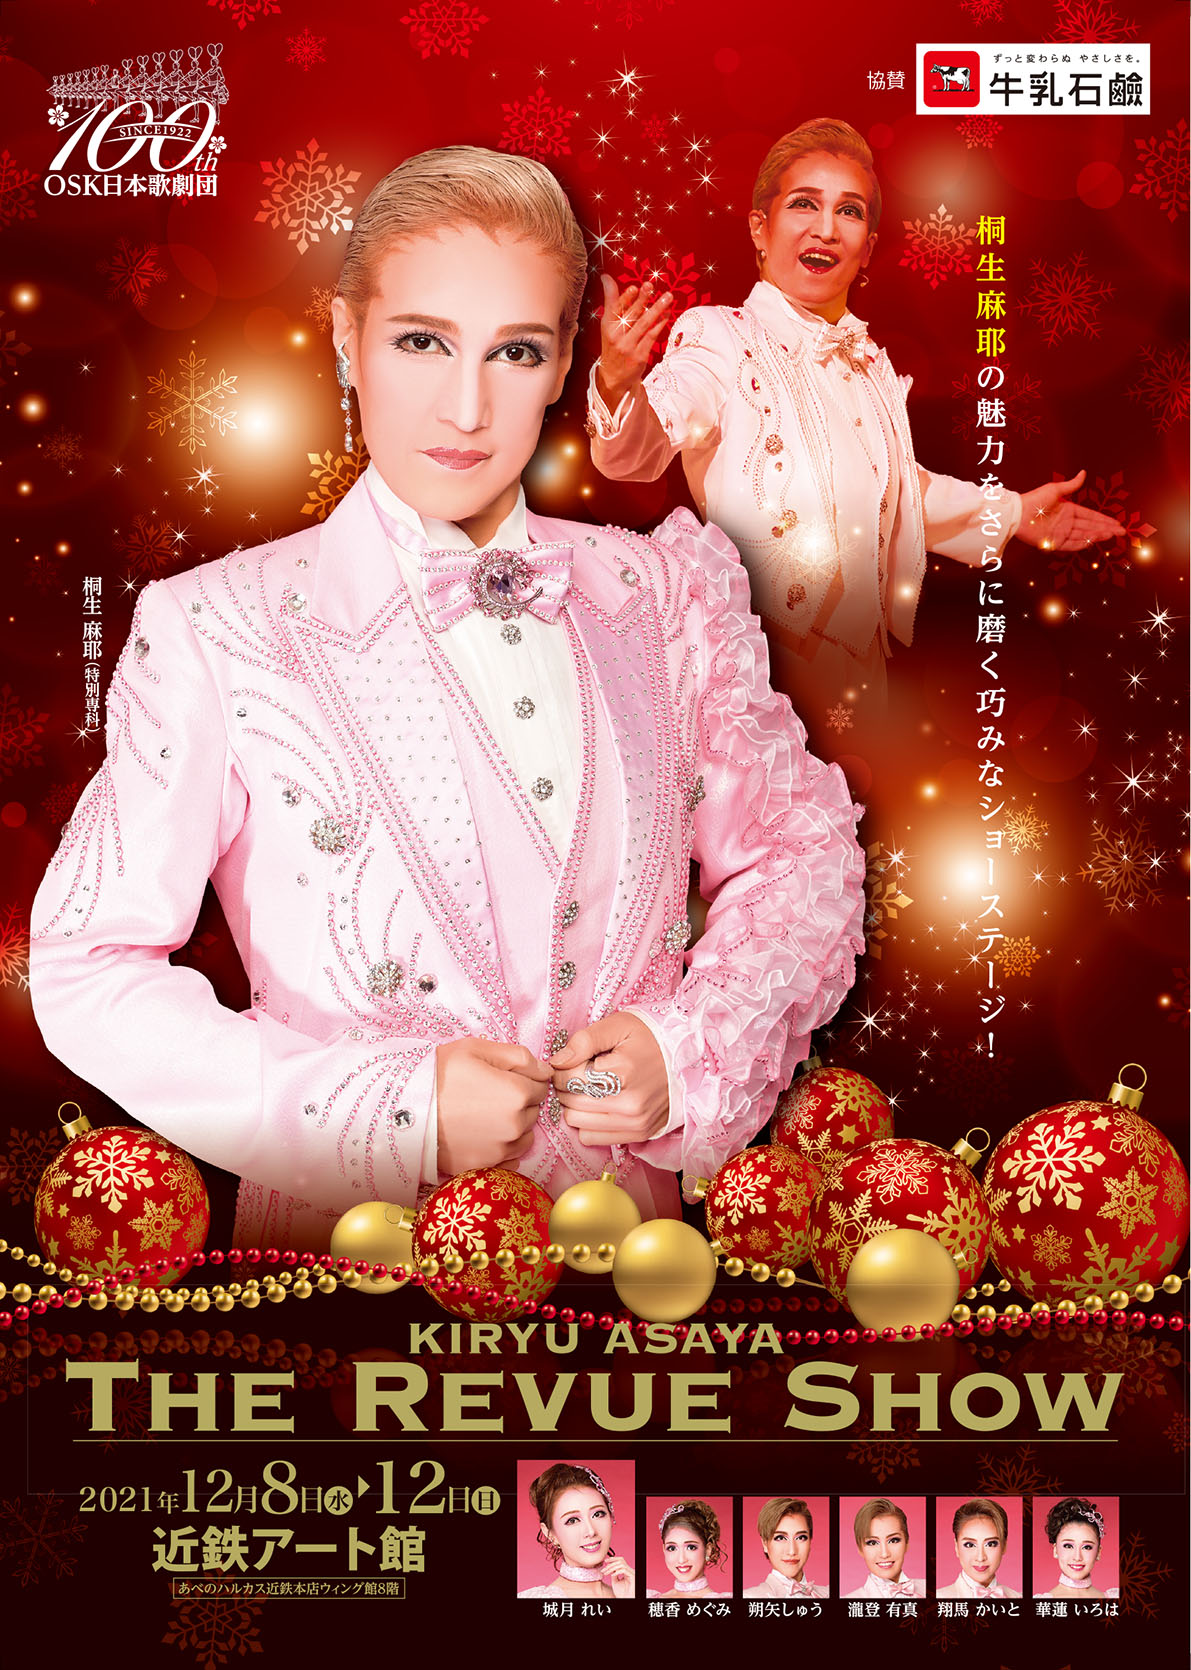 桐生麻耶主演「THE REVUE SHOW」 | OSK日本歌劇団